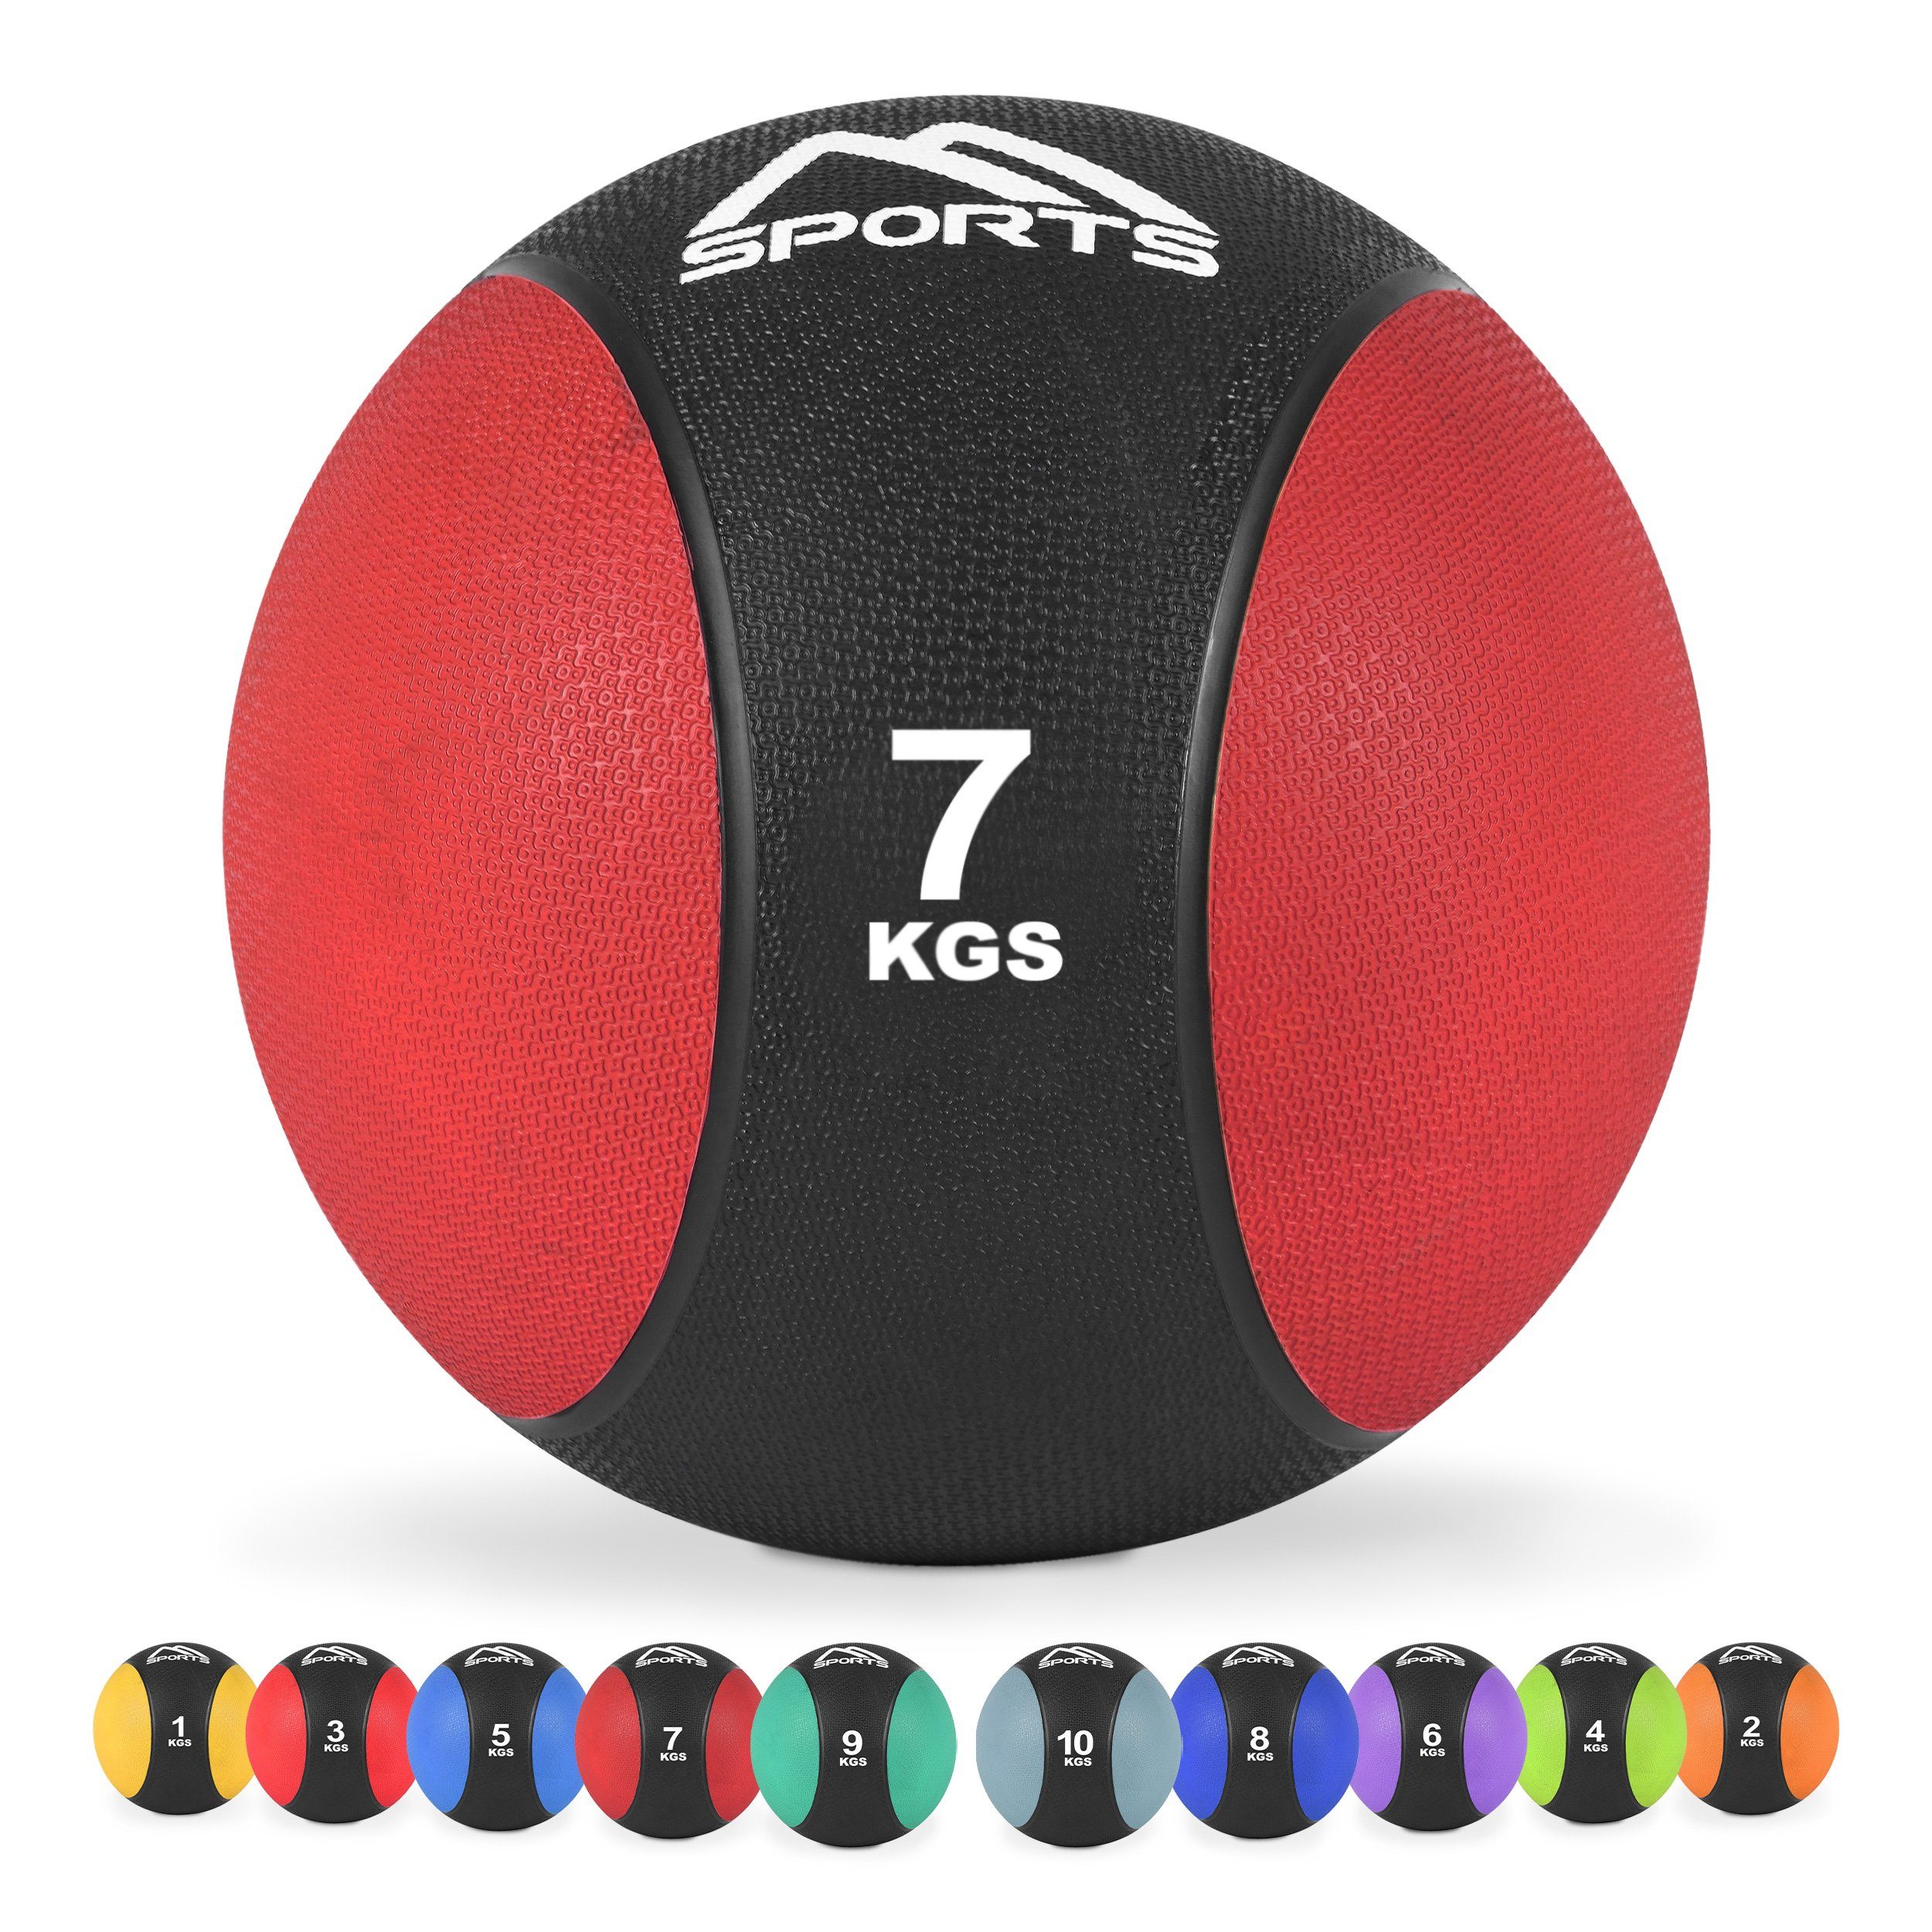 MSports® Medizinball Medizinball 1 – 10 kg – inkl. Übungsposter 7 kg - Rot